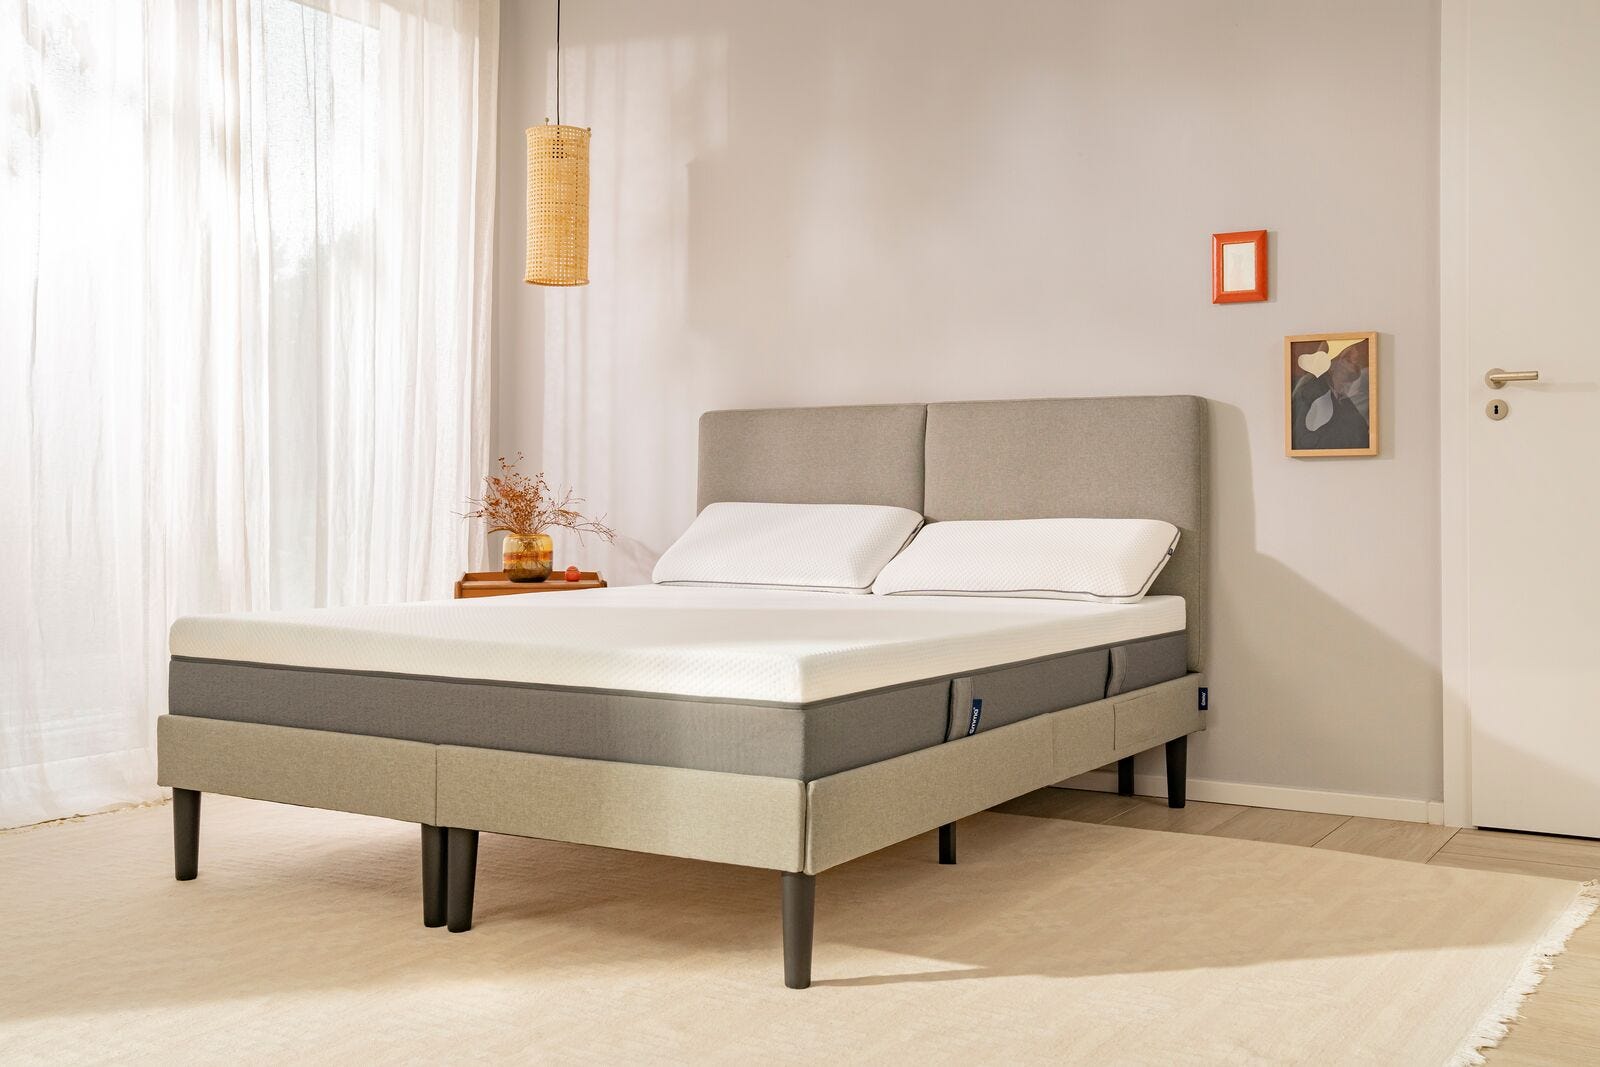 2 almohadas viscoelásticas emma encima de una cama tapizada